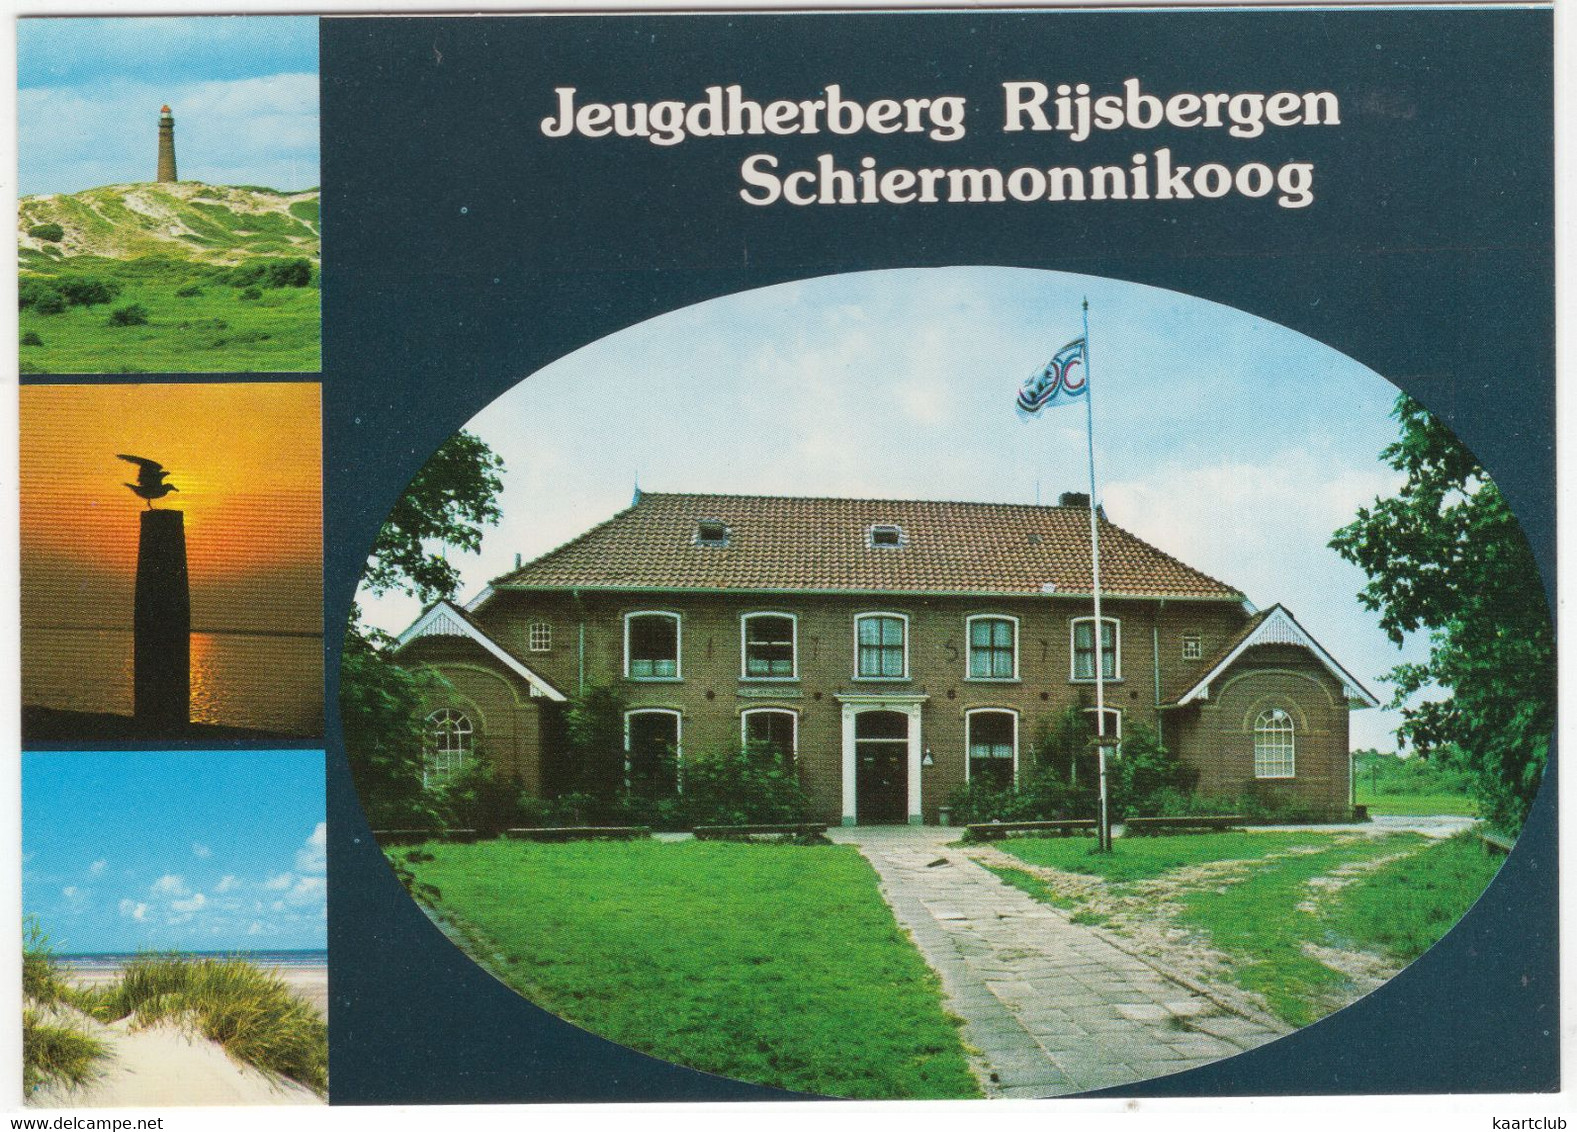 Schiermonnikoog - Jeugdherberg 'Rijsbergen', Knuppeldam 2 - (Nederland/Holland) - Schiermonnikoog